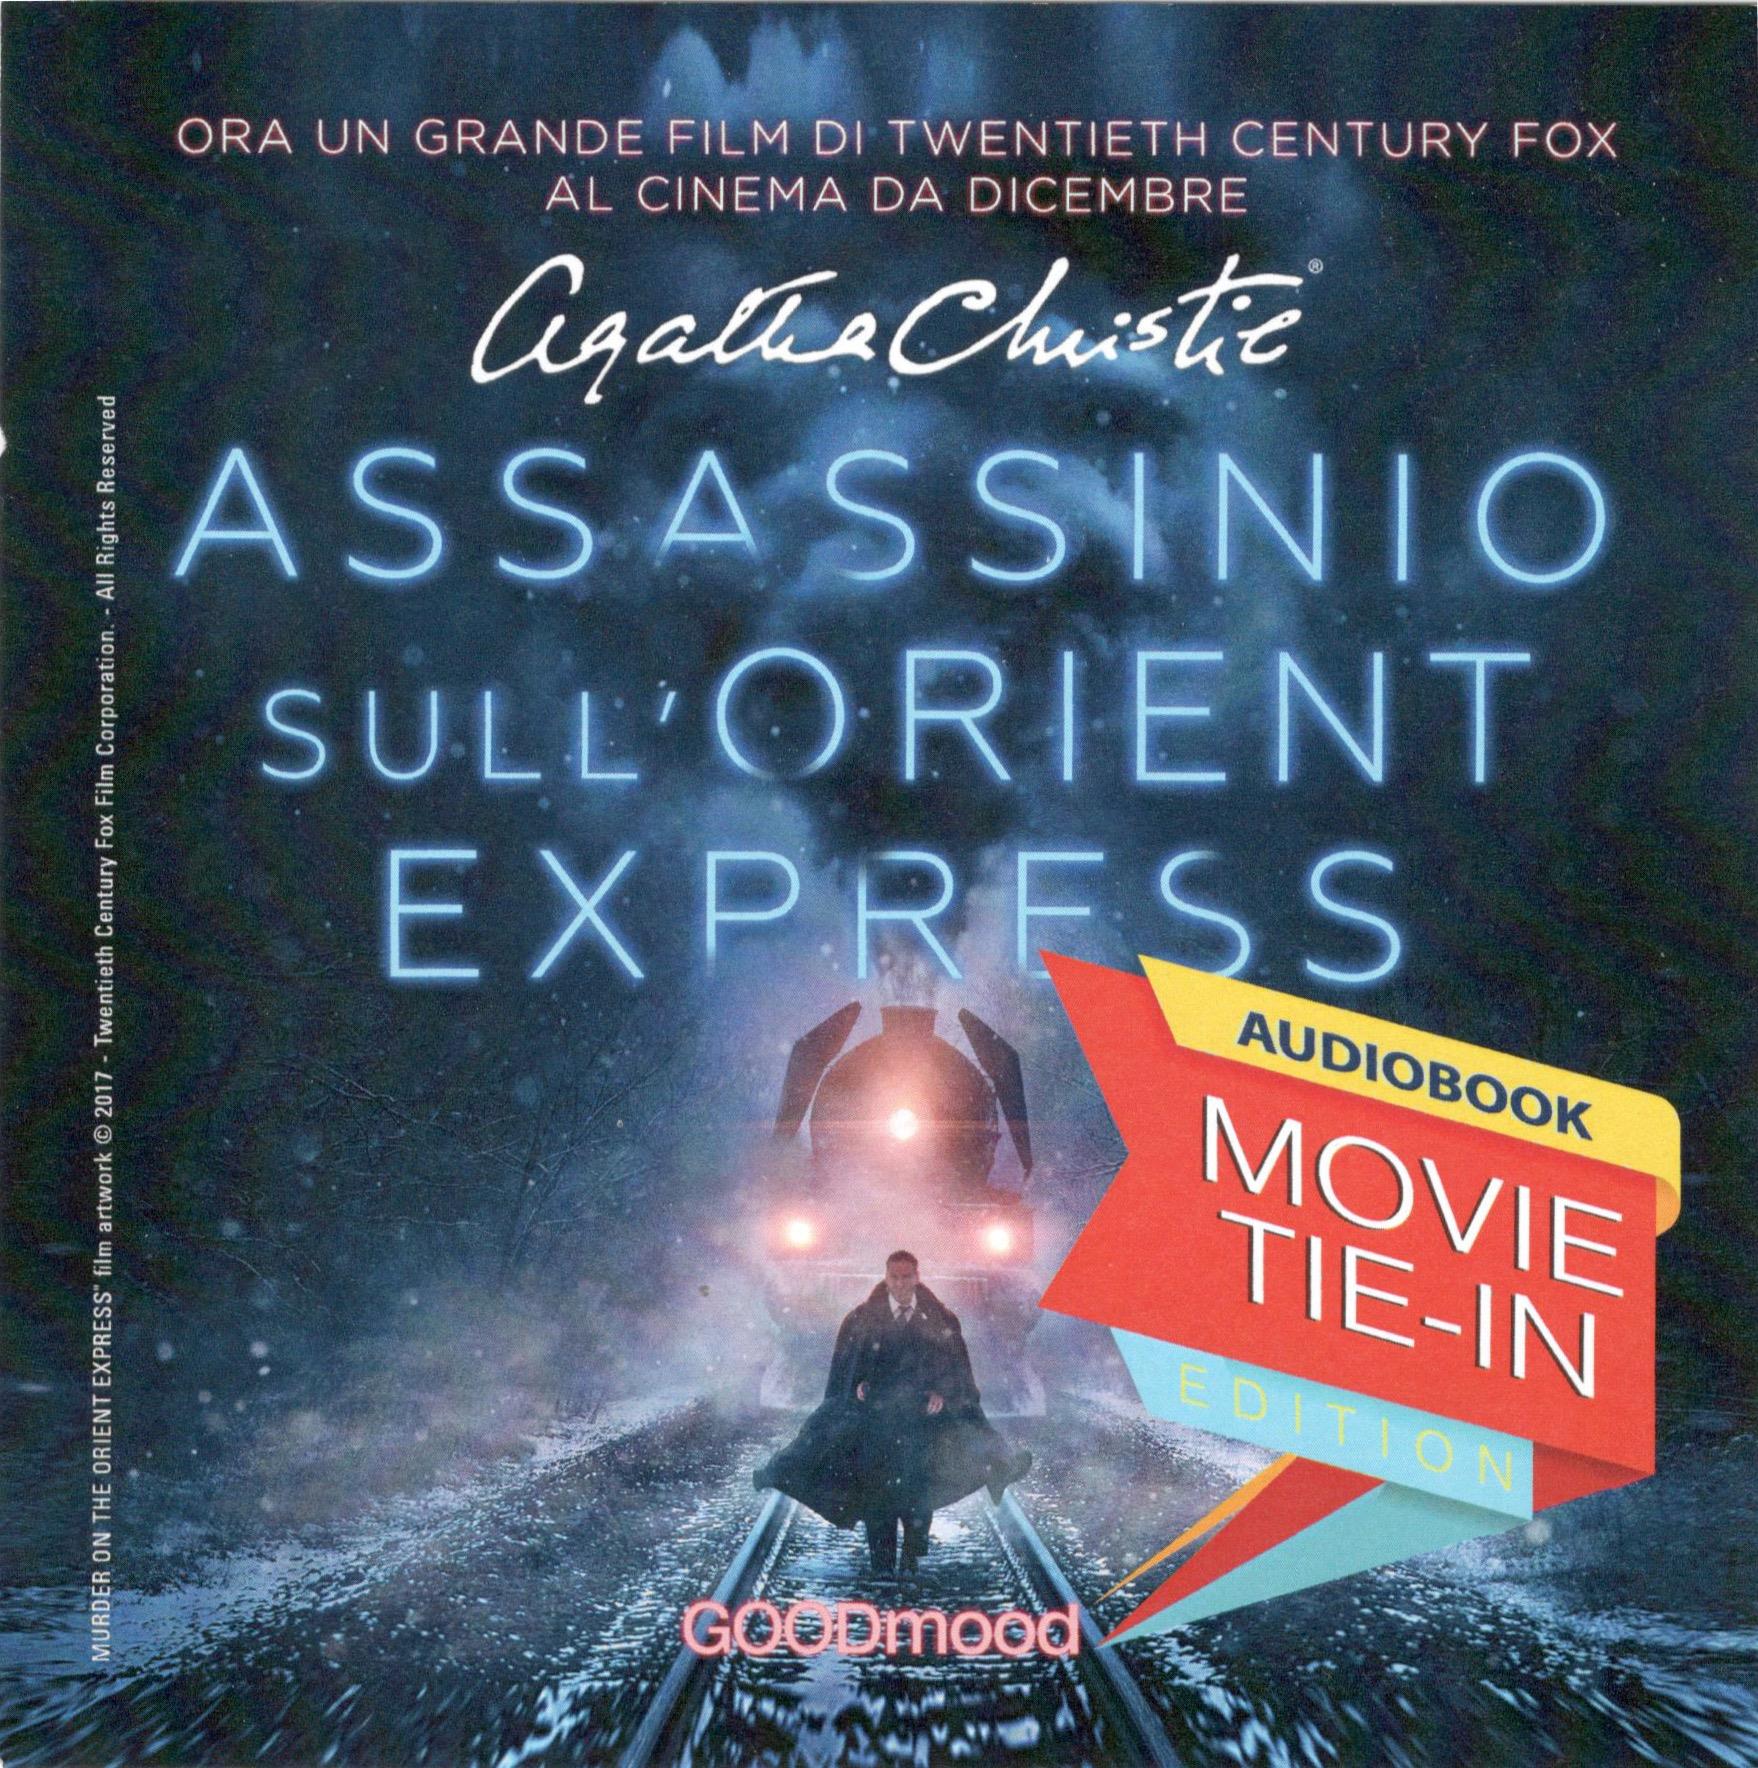 L'audiolibro di Assassinio sull'Orient Express